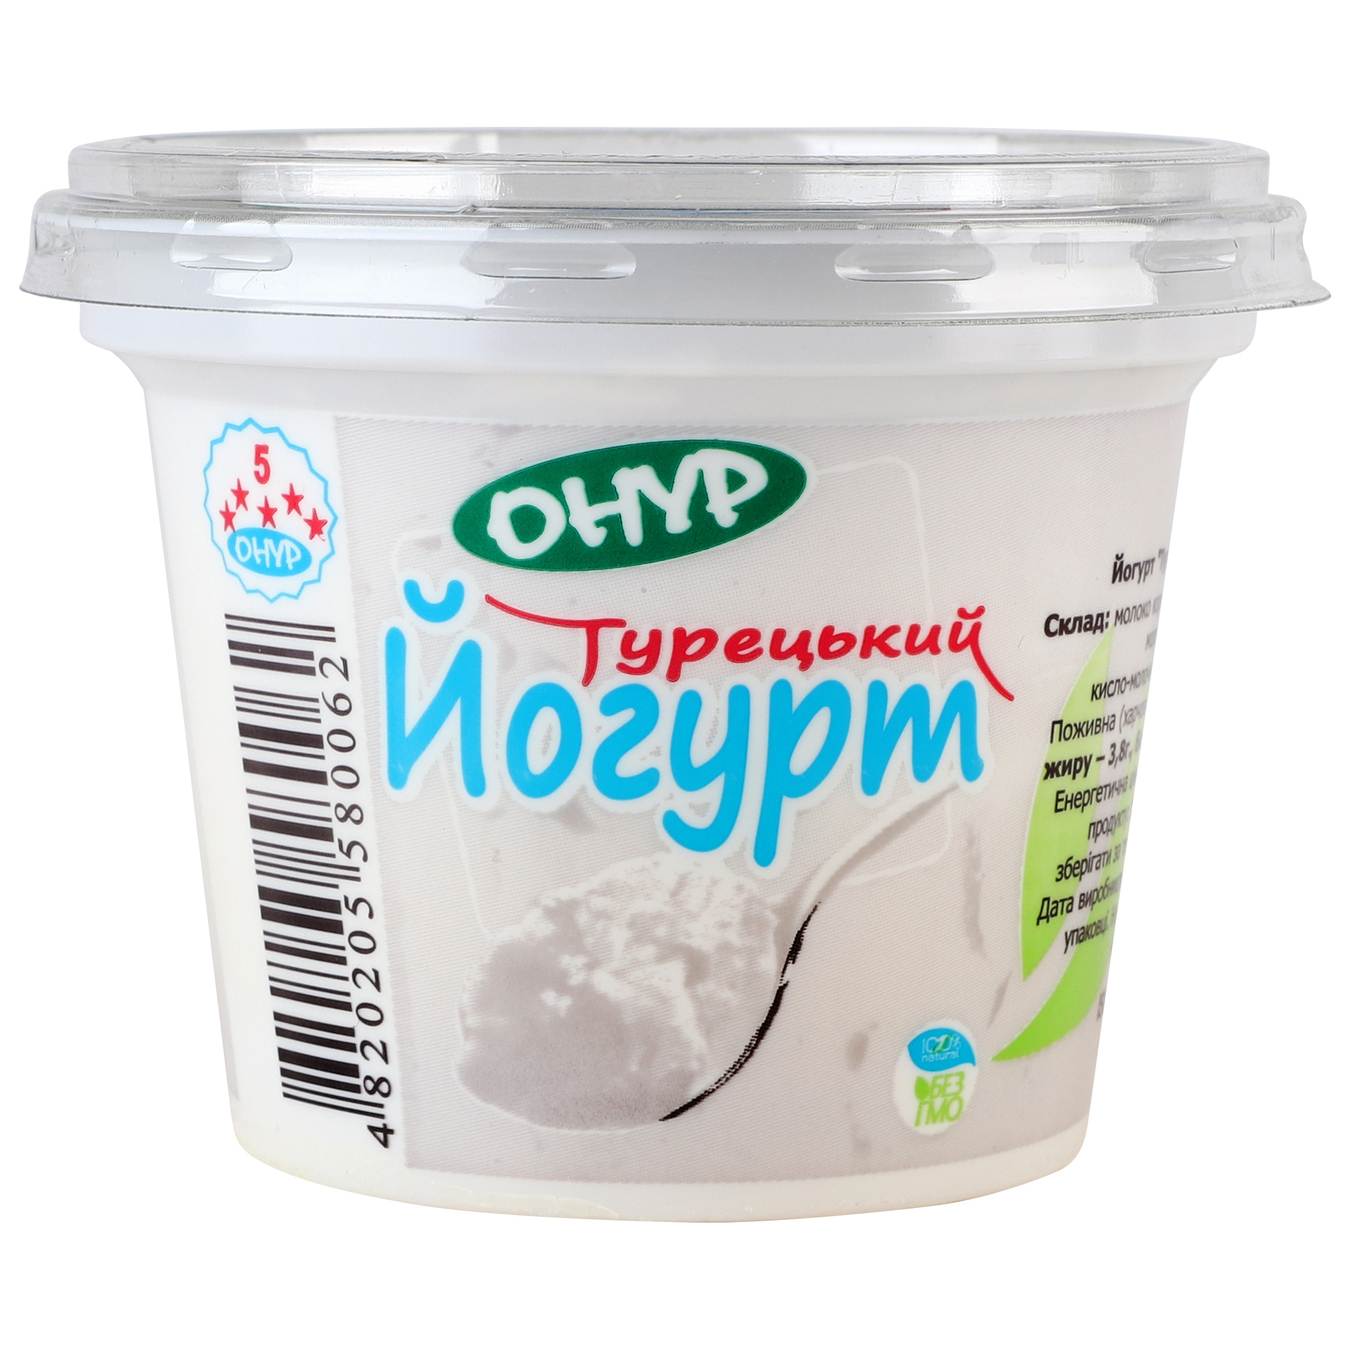 Onur Tyrkisa Yogurt 3,8% 250g